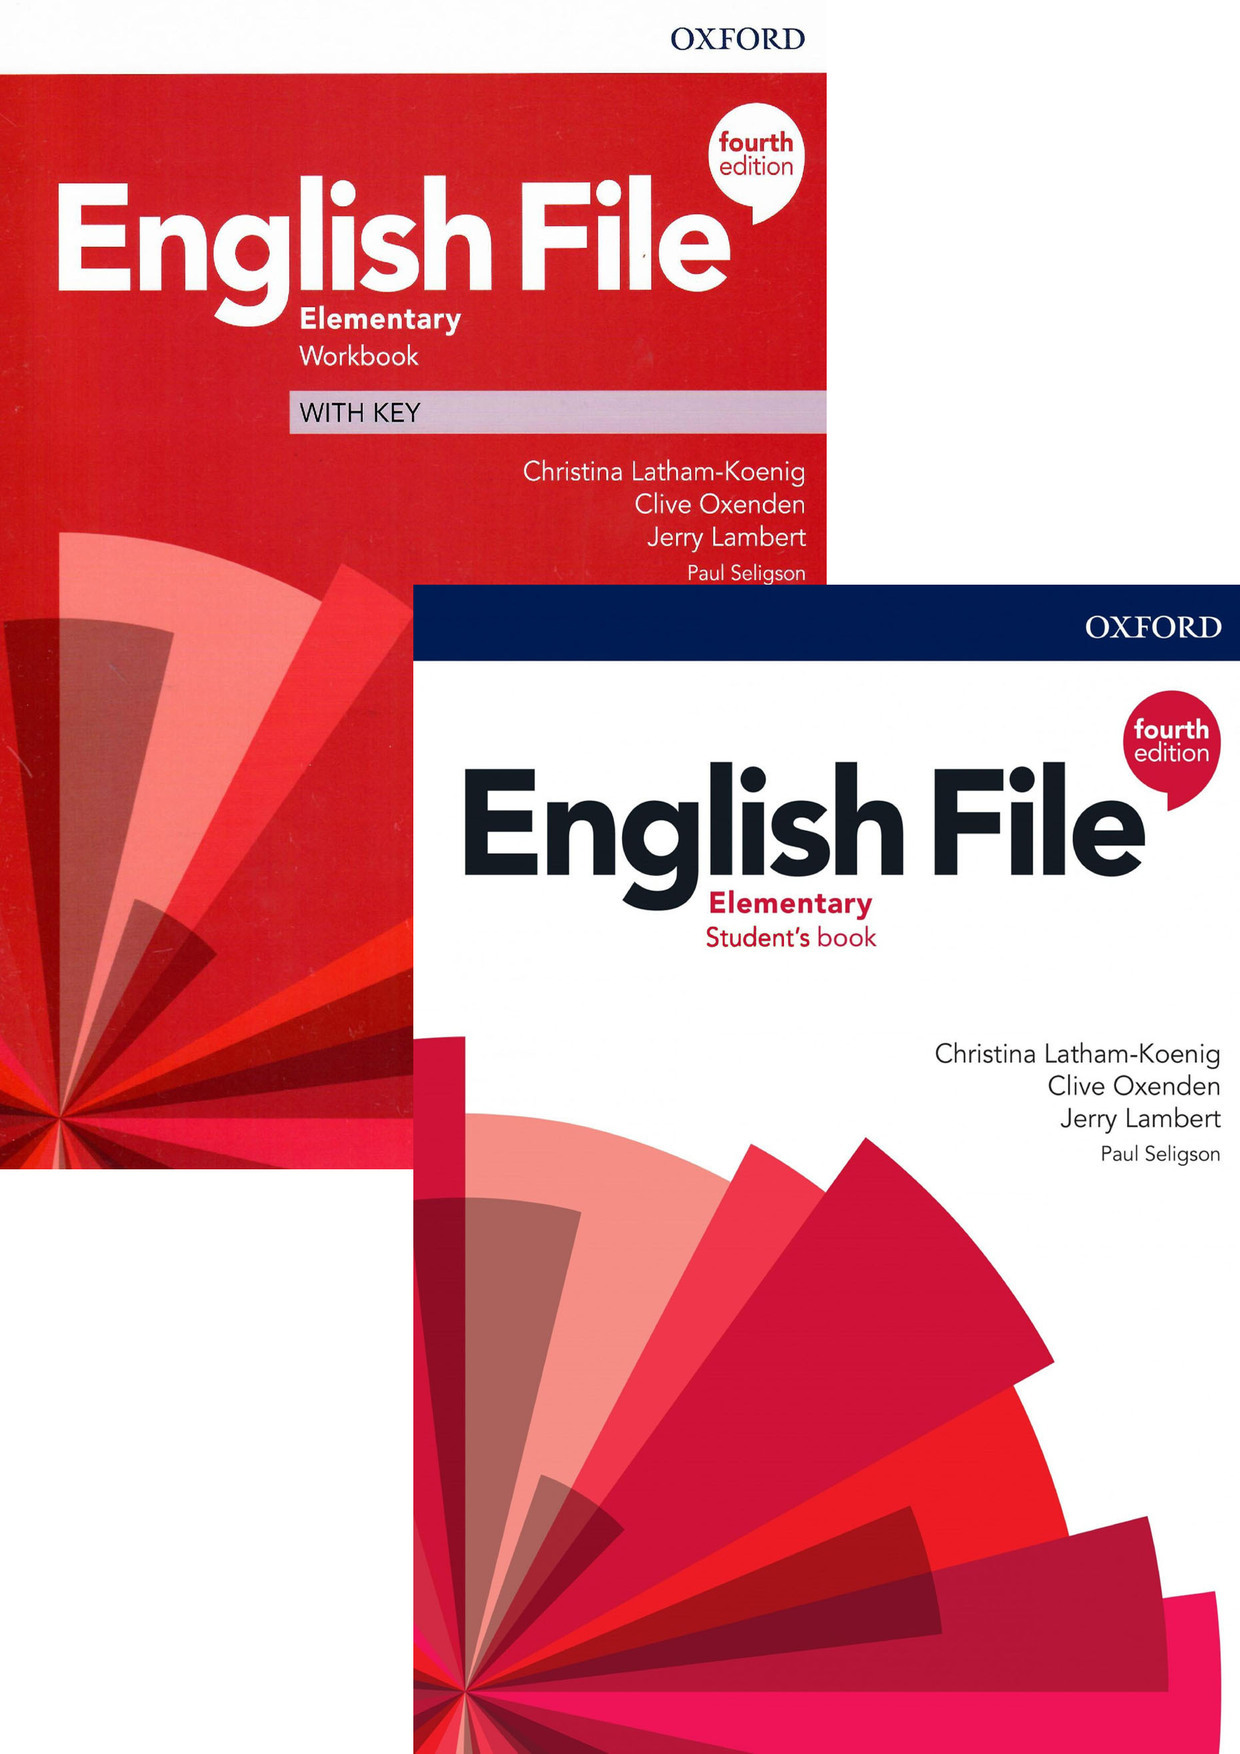 Workbook english advance. English file Elementary 4th Edition. English file 4th Edition Elementary ответы. English file Elementary Workbook 4th Edition. English file 4th Edition.